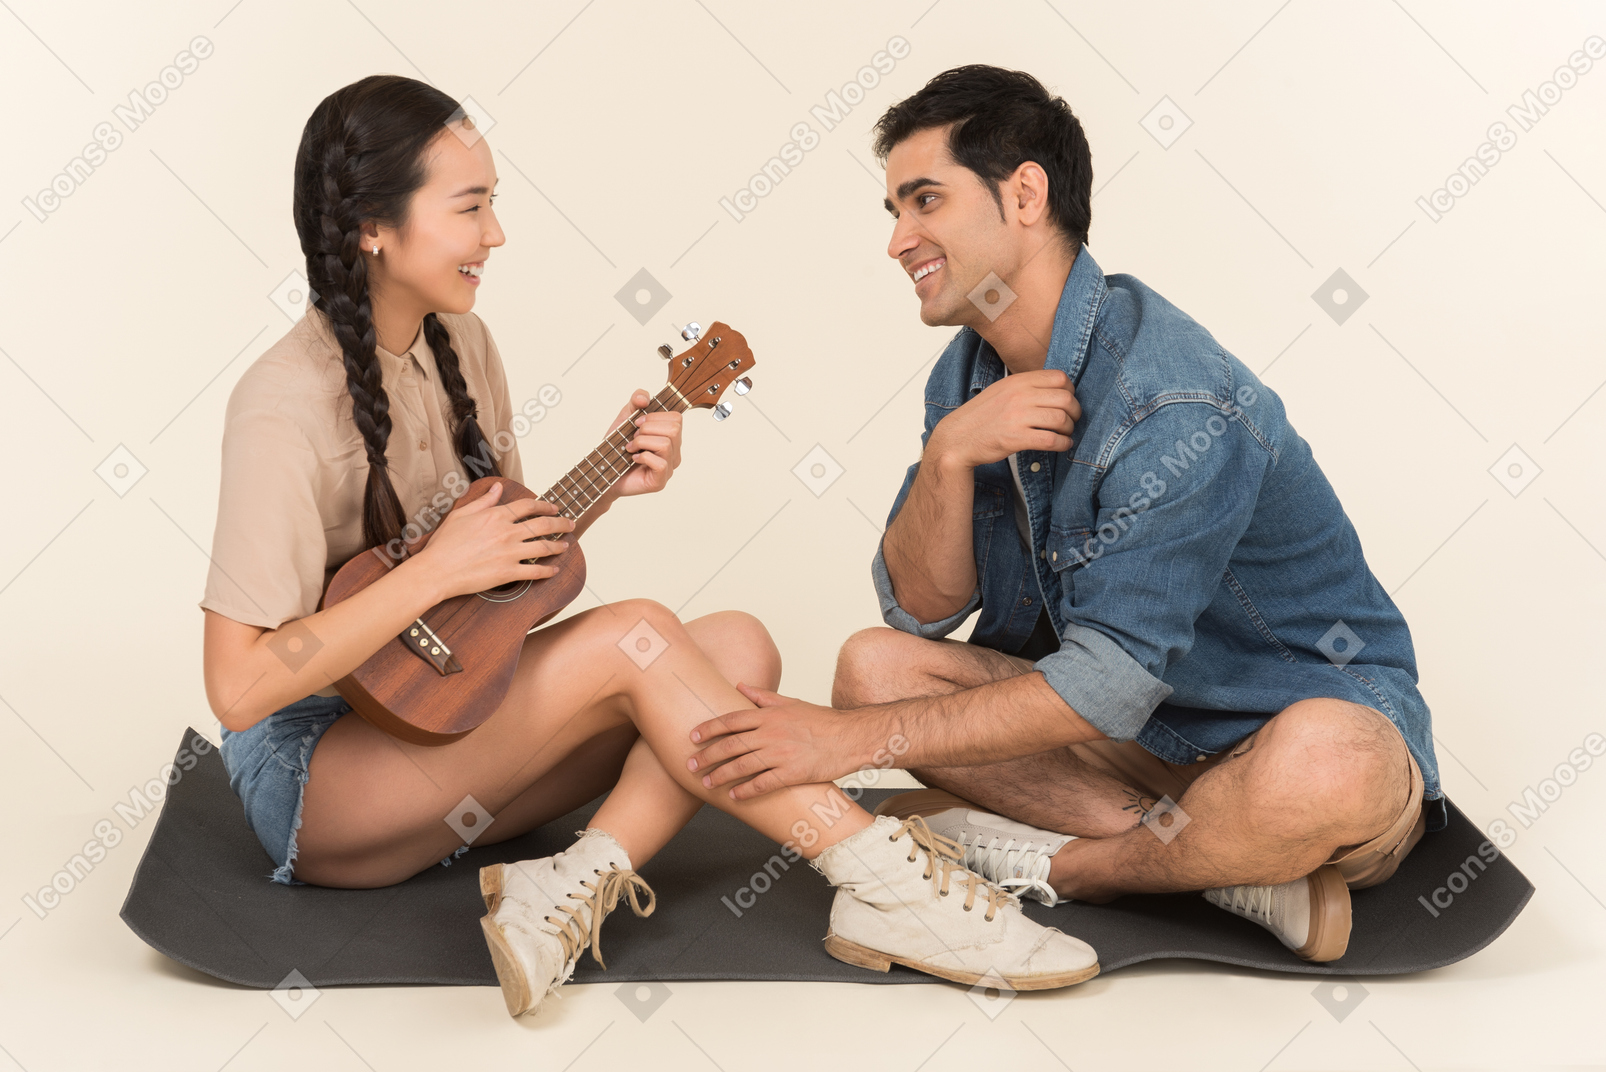 Junge asiatische frau, die ihre gitarre und jungen mann spielt, wird von ihr verzaubert